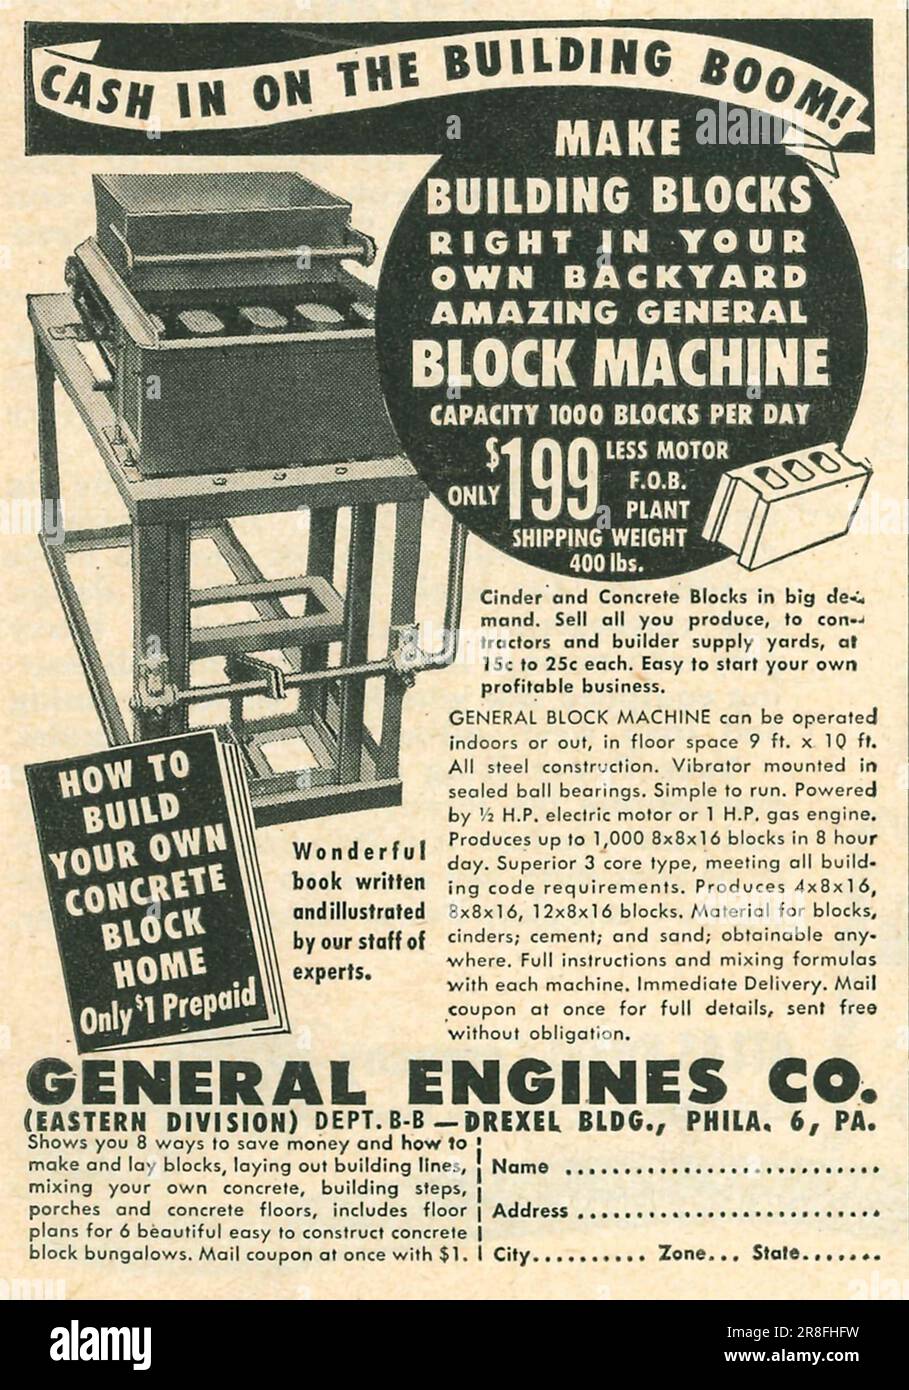 General Engines Co - faire des blocs de construction - bloc machine annonce dans un magazine 1949 Banque D'Images